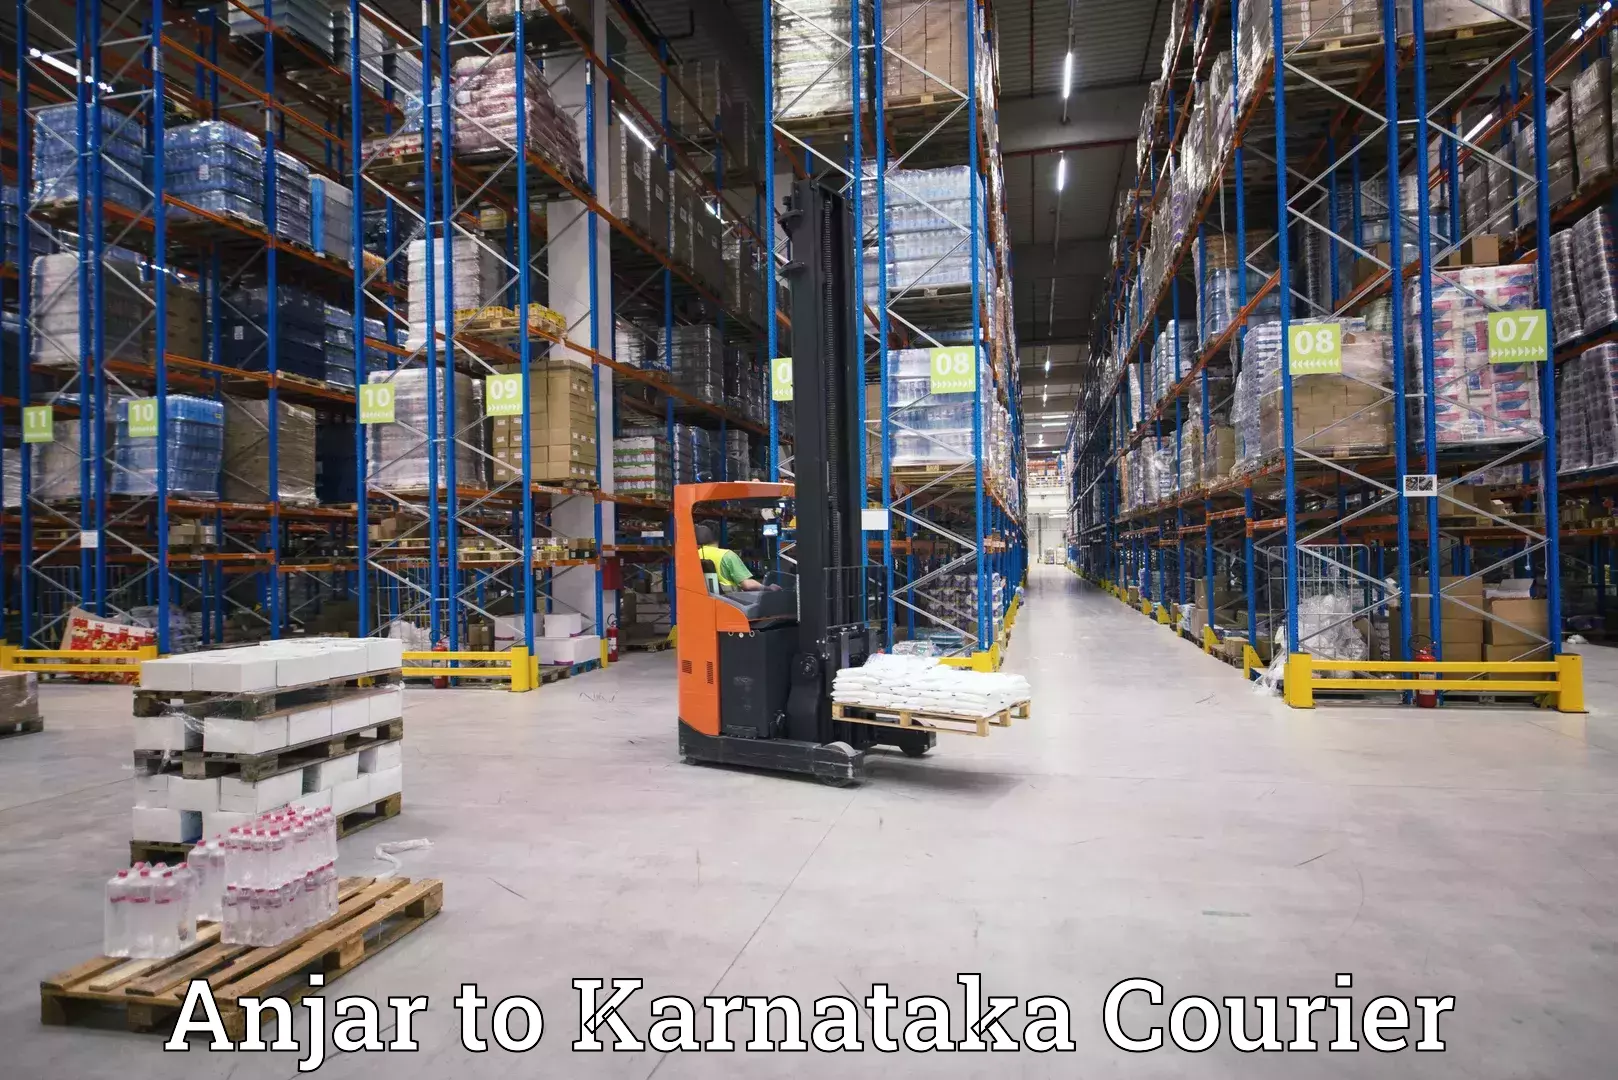 Modern courier technology Anjar to Karnataka